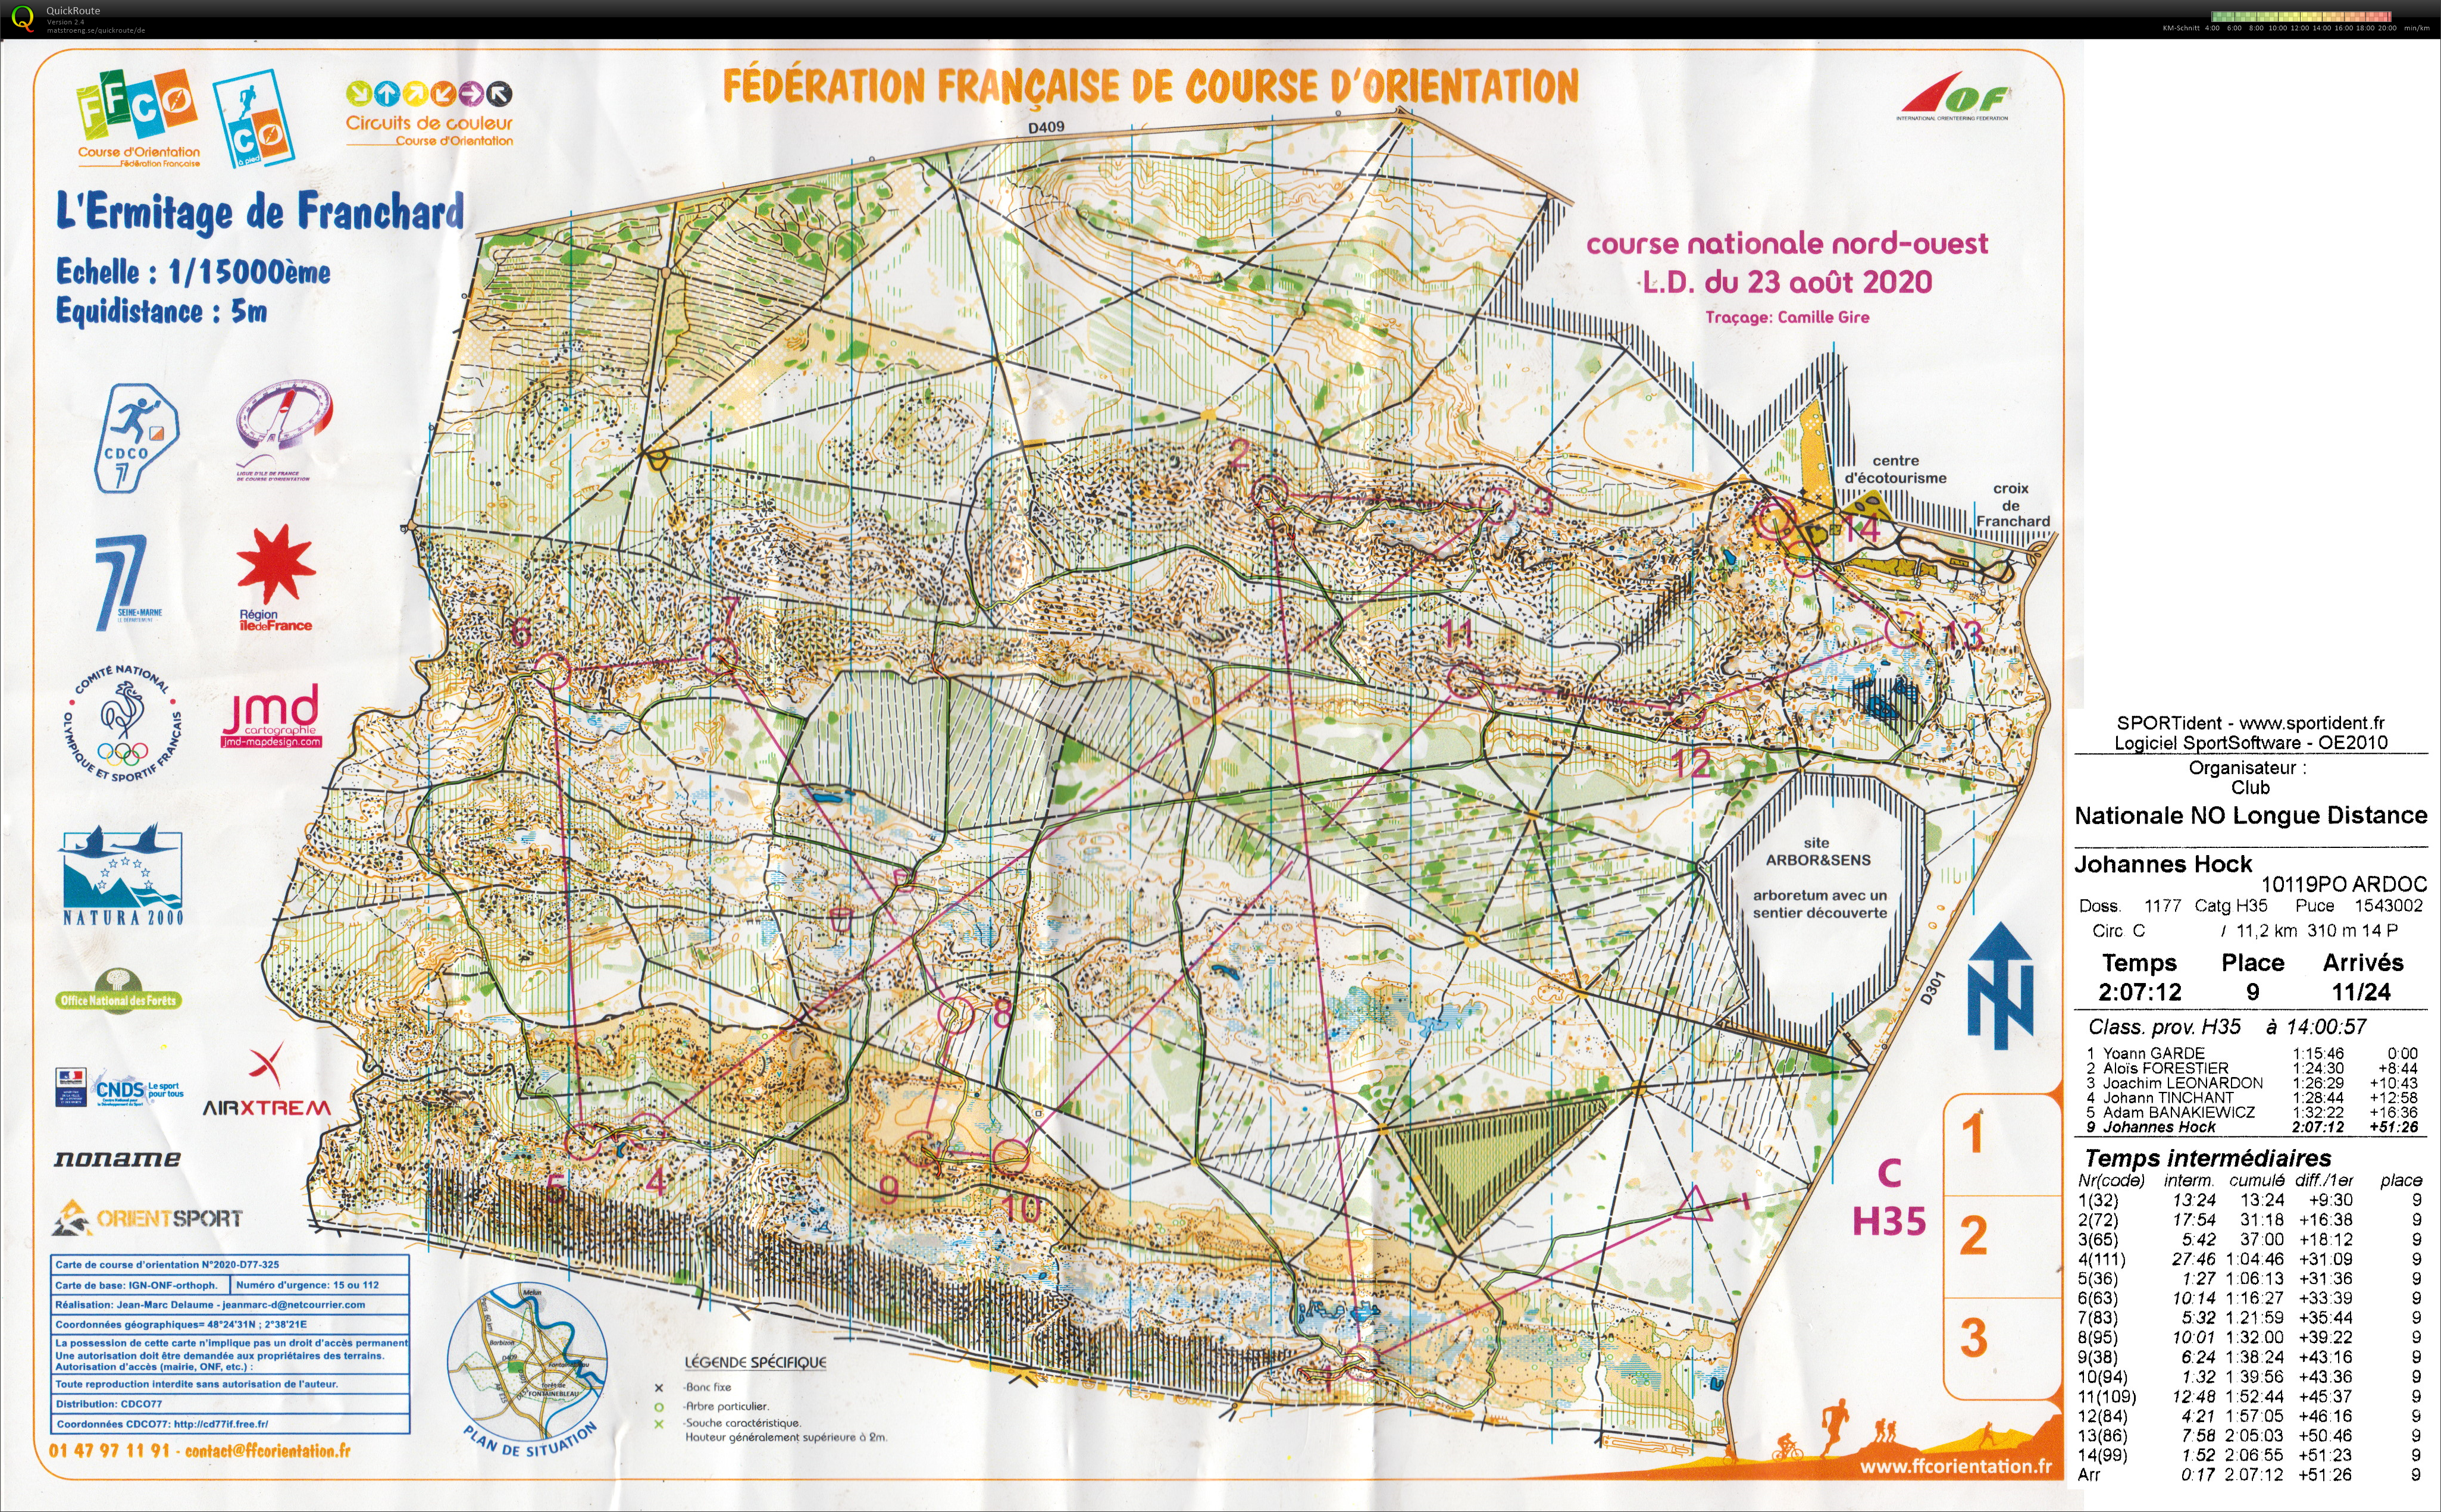 Course nationale L.D. Fontainebleau (23.08.2020)